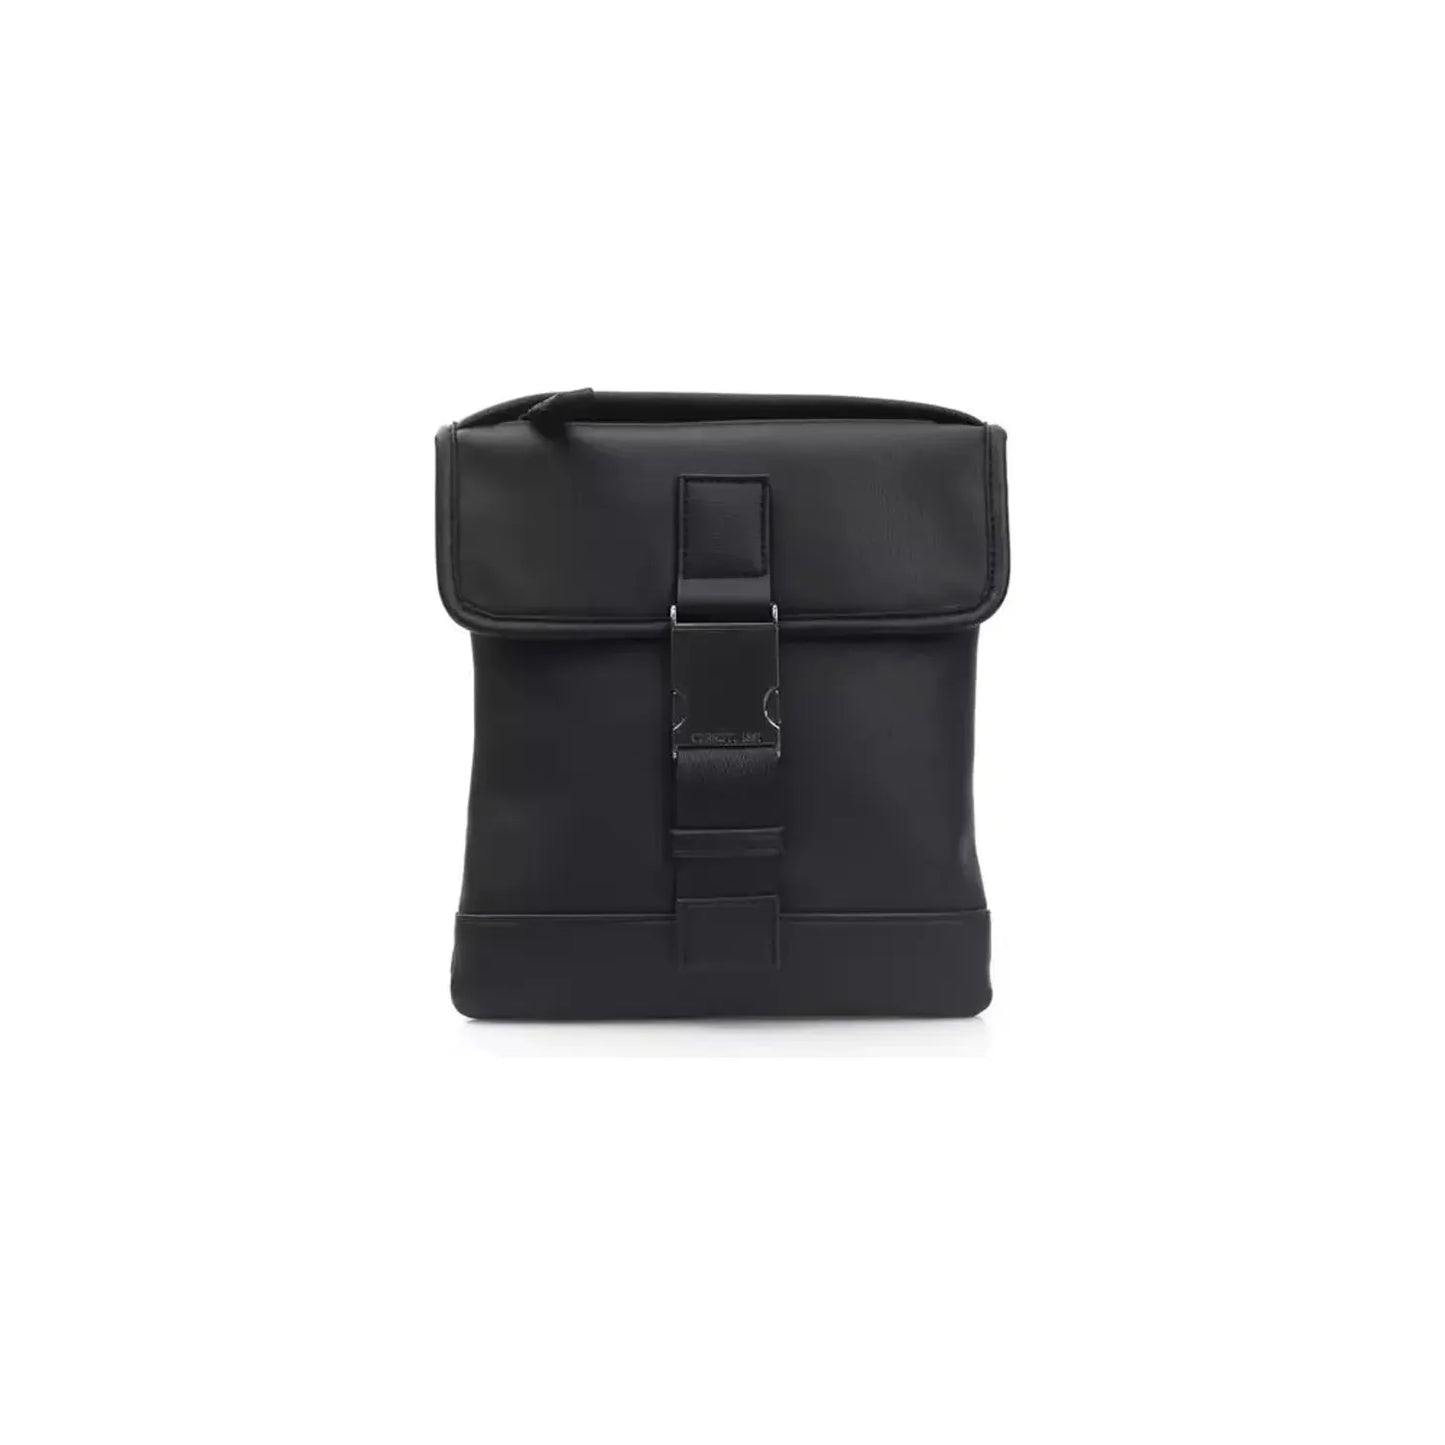 Cerruti 1881 Elegant Black Messenger Bag with Metal Clasp black-polyurethane-messenger-bag